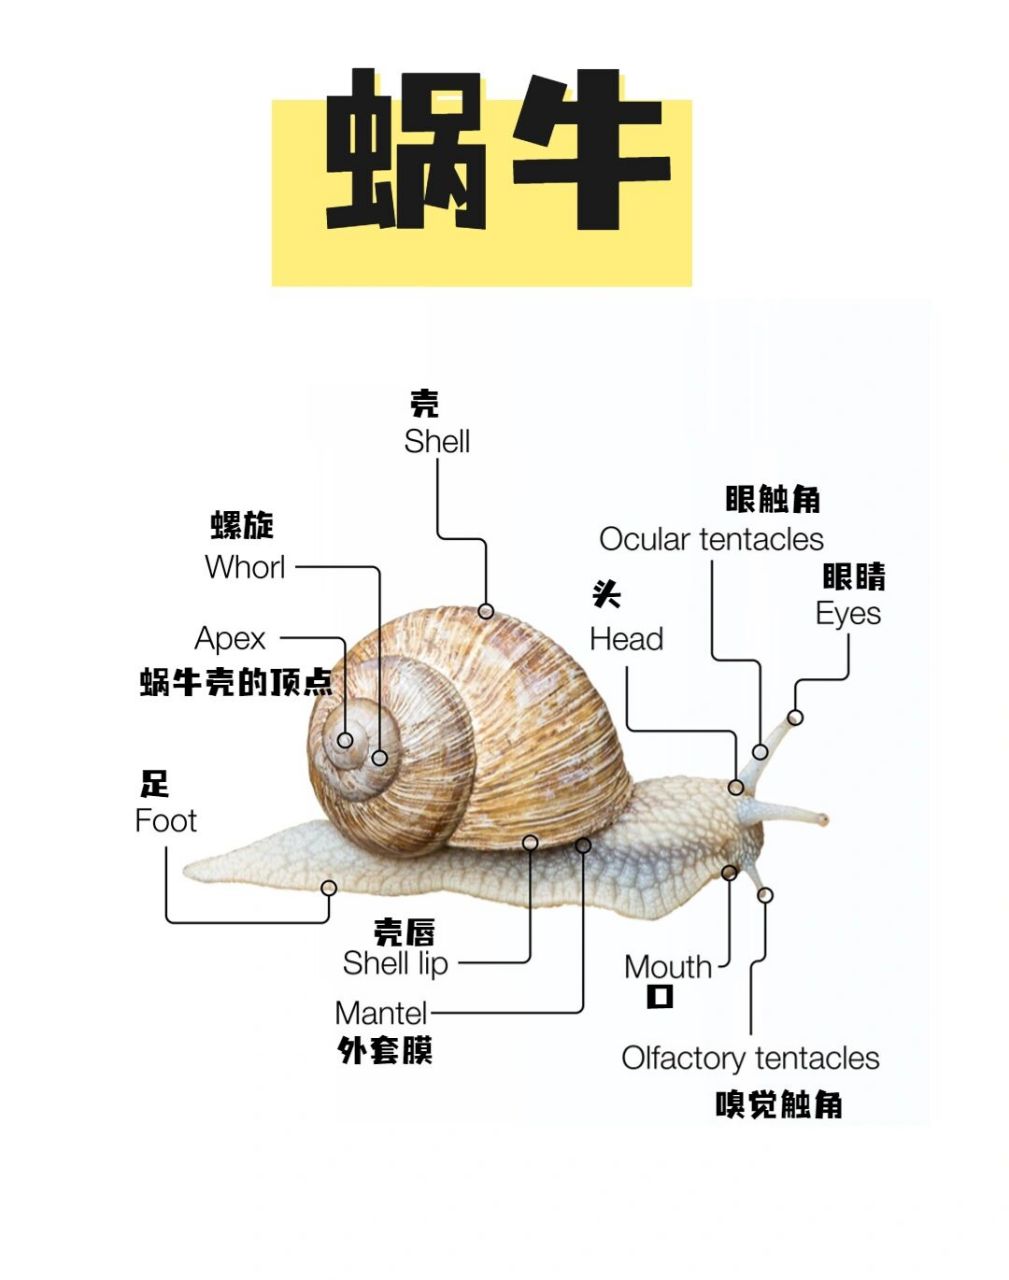 蜗牛身体介绍图图片